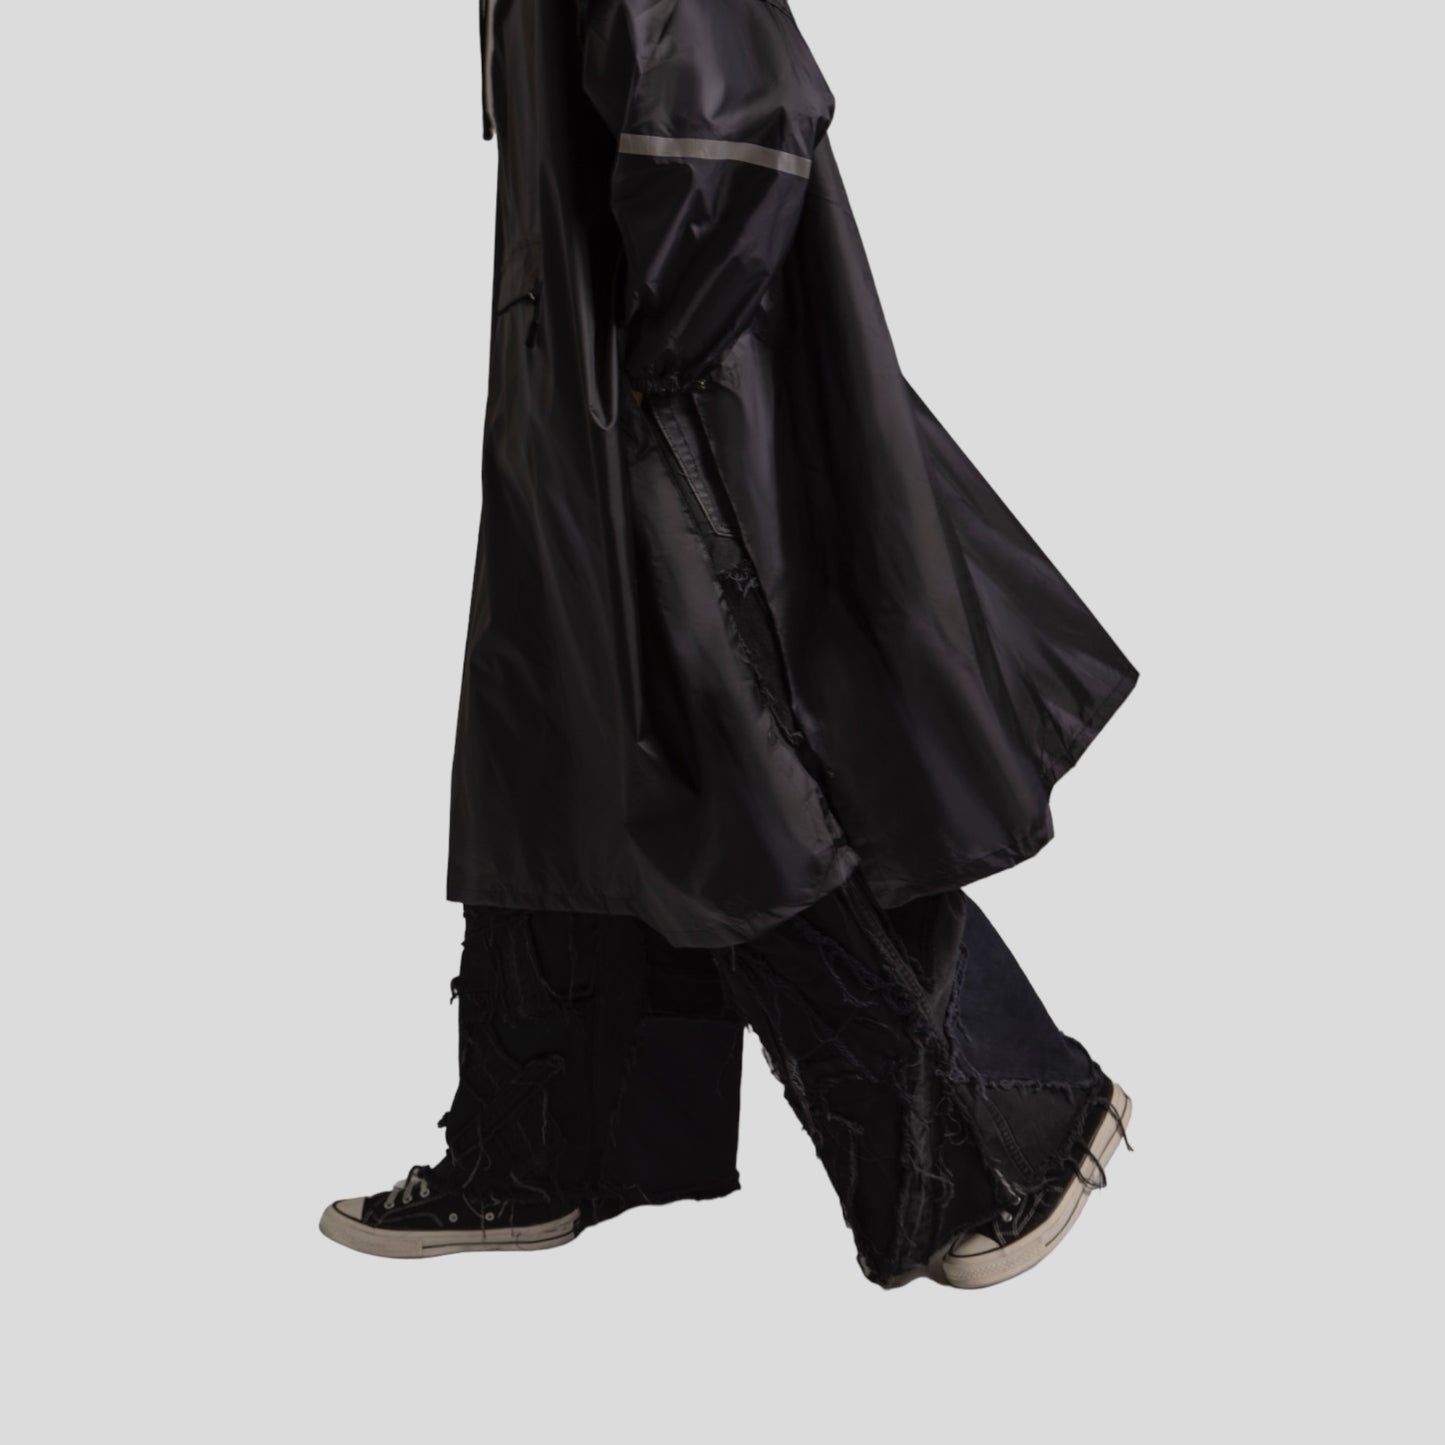 All-black raincoat